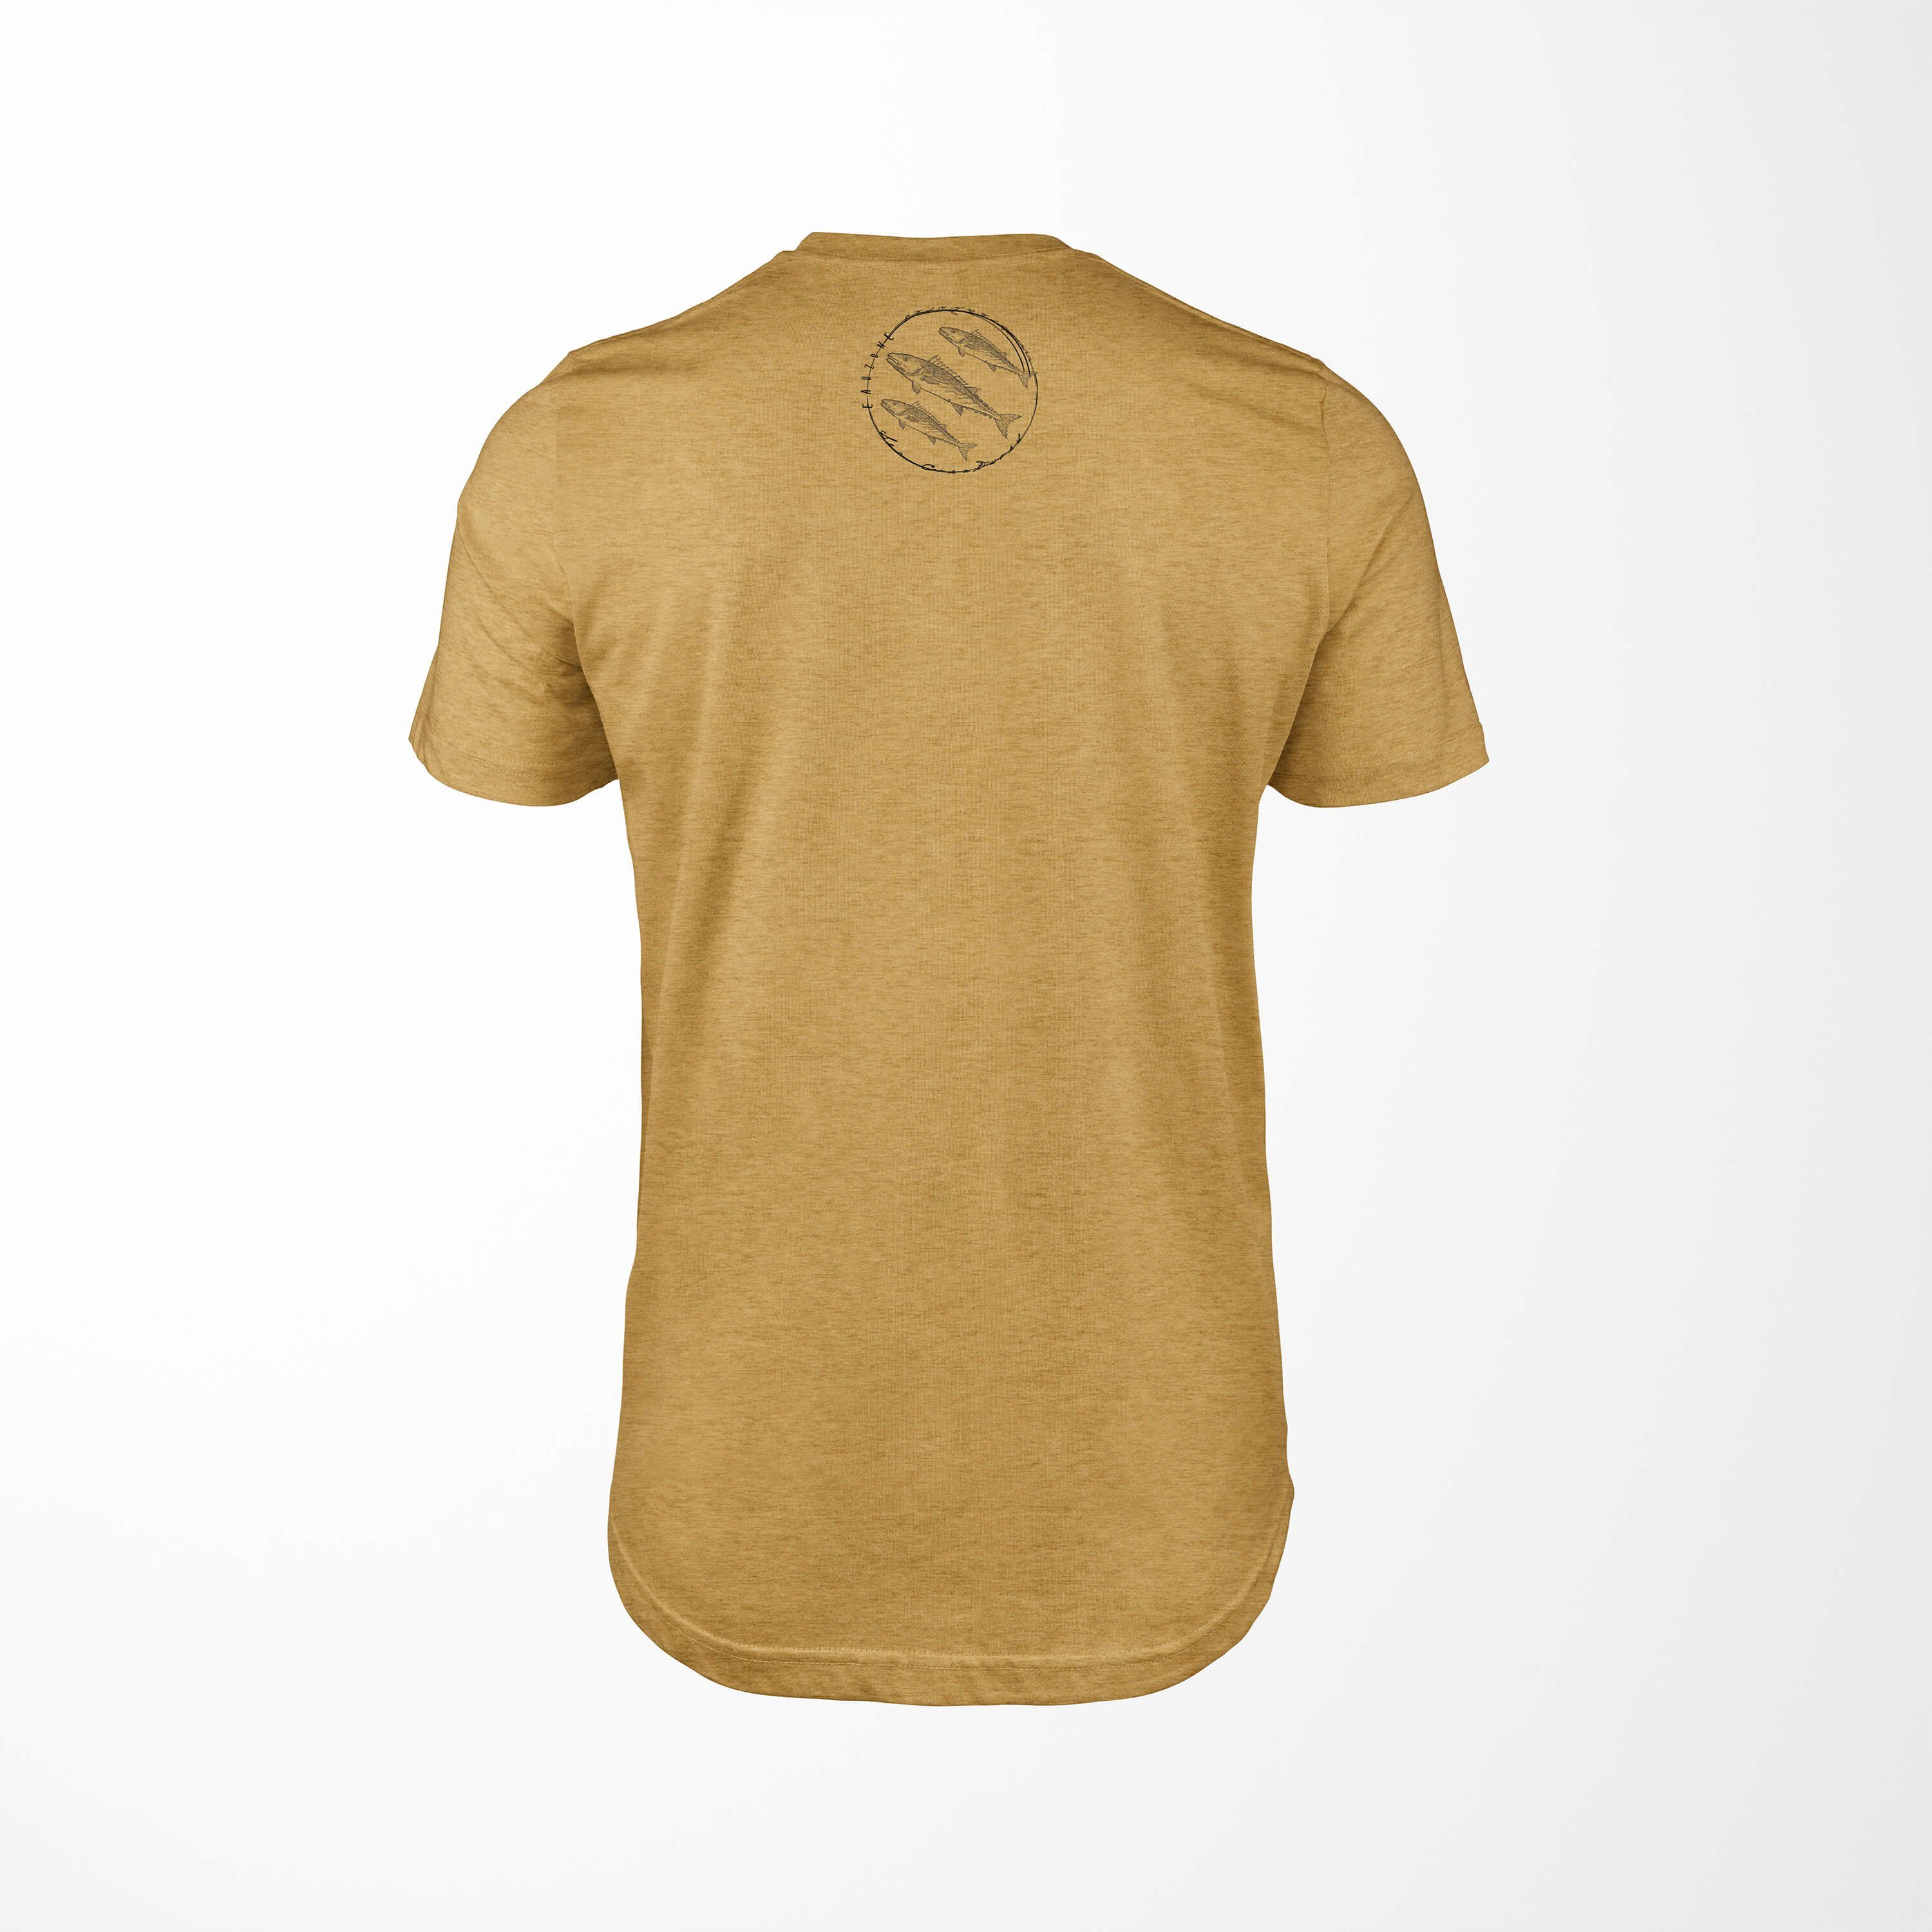 Struktur Tiefsee - Gold und Art Sea T-Shirt Serie: / sportlicher Sea Creatures, 094 Sinus T-Shirt feine Schnitt Fische Antique